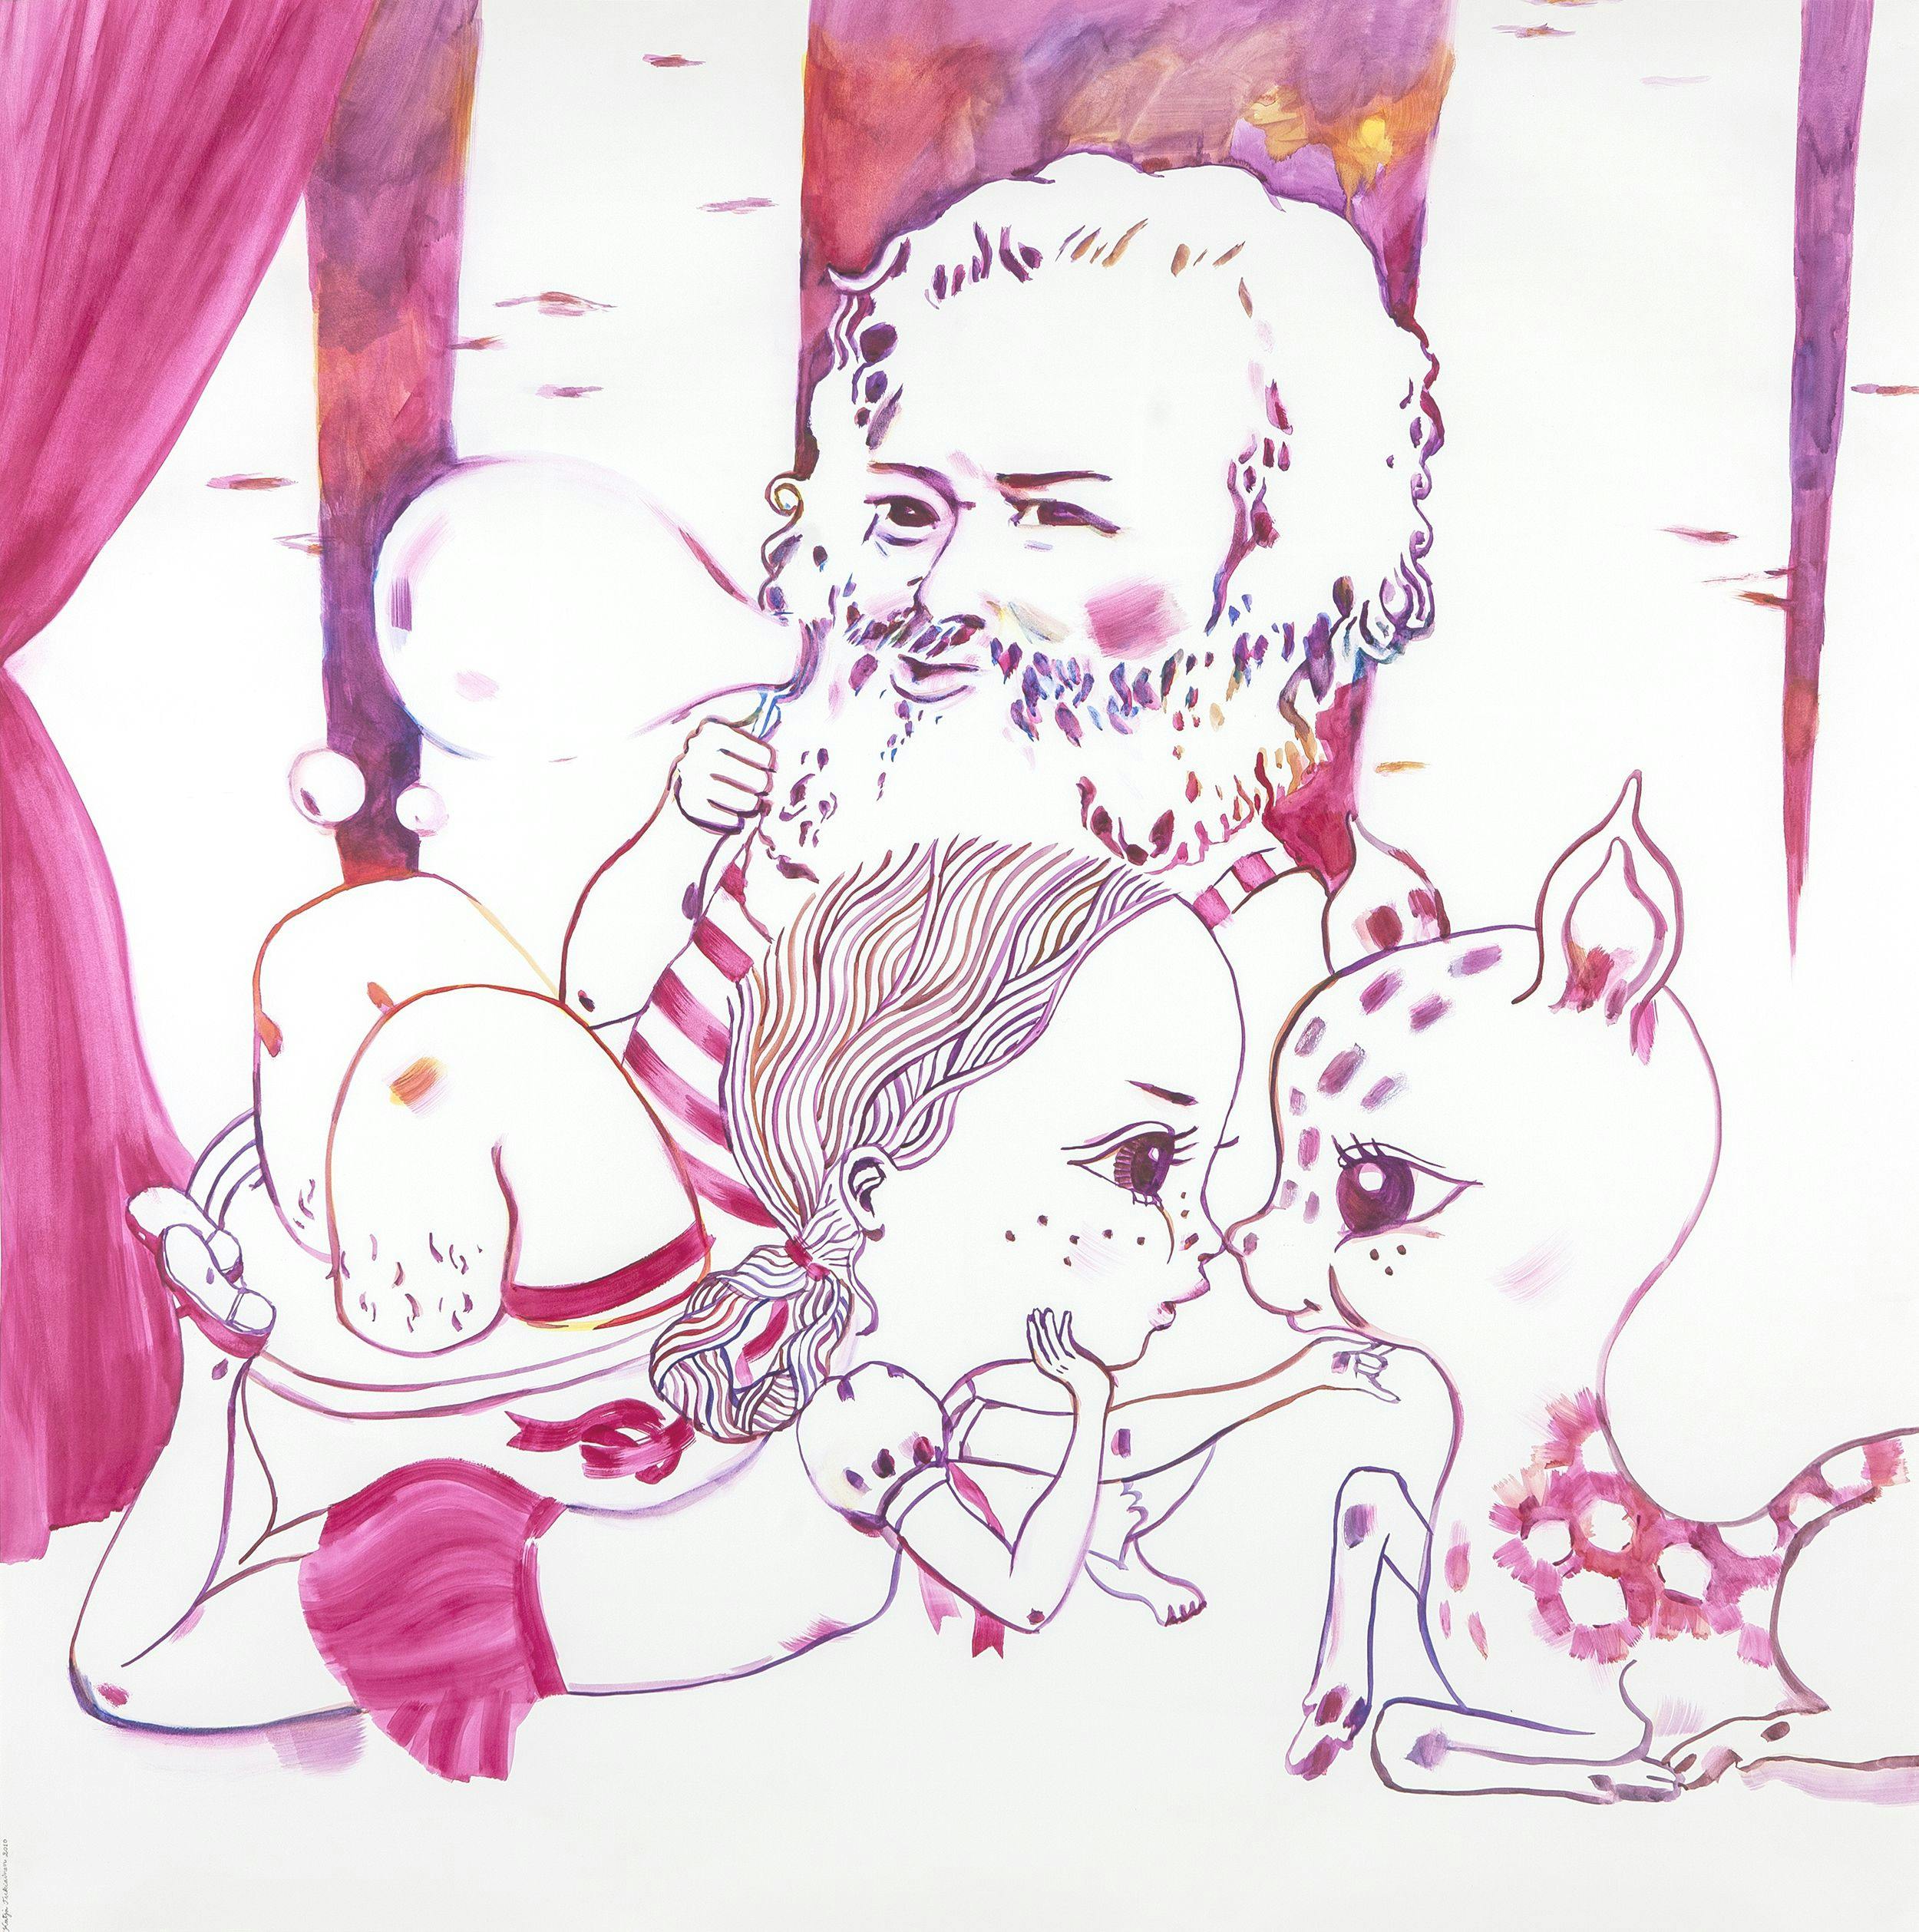 Artwork: Katja Tukiainen, Mlle Good Heavens bathes with Karl Marx, 2010